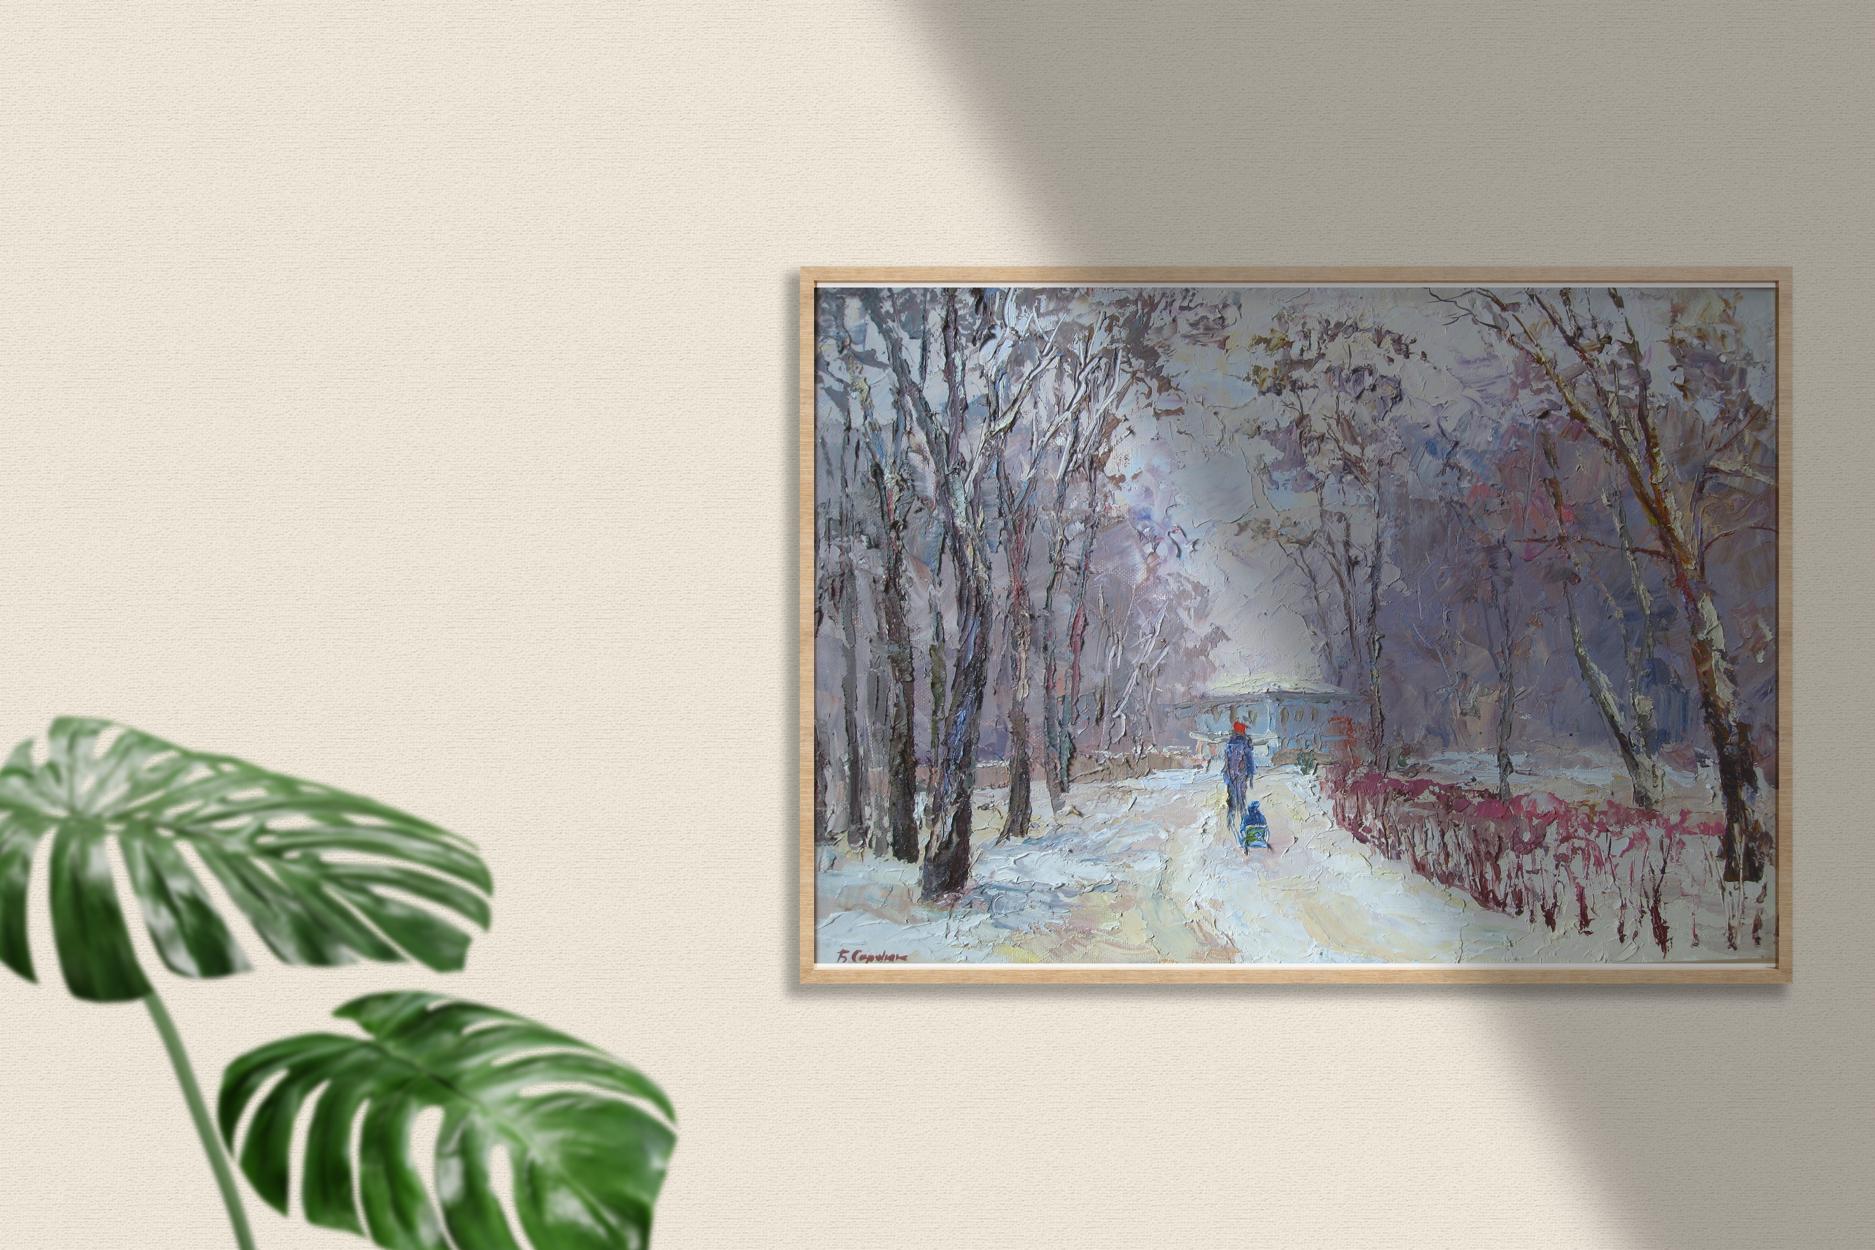 Winter Walk: an oil painting by Boris Petrovich Serdyuk